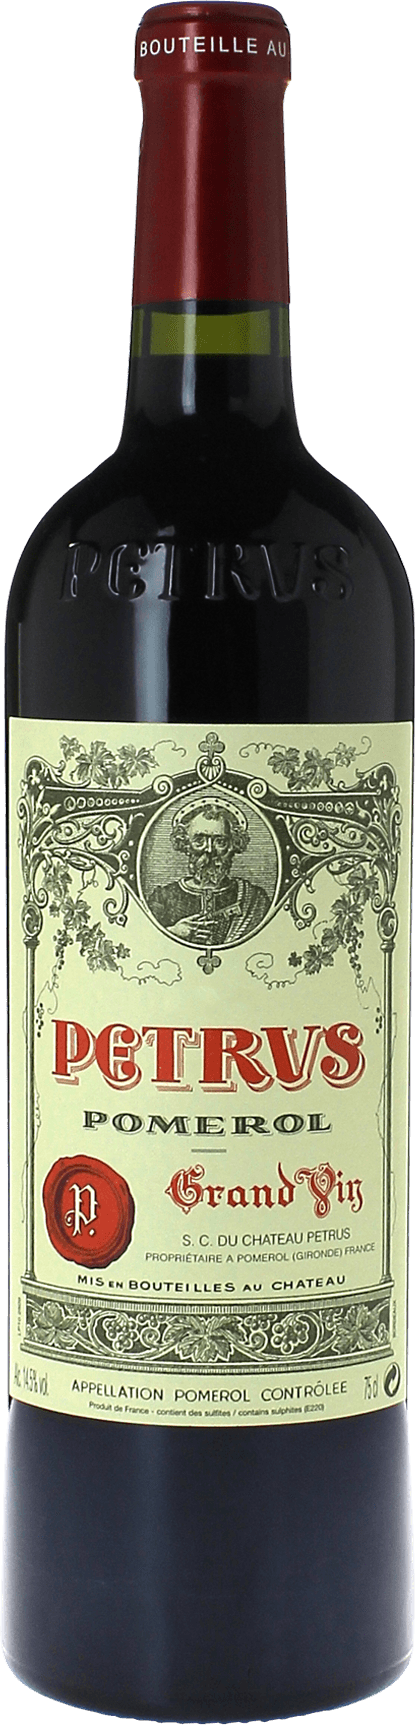 Petrus 1977  Pomerol, Bordeaux rouge